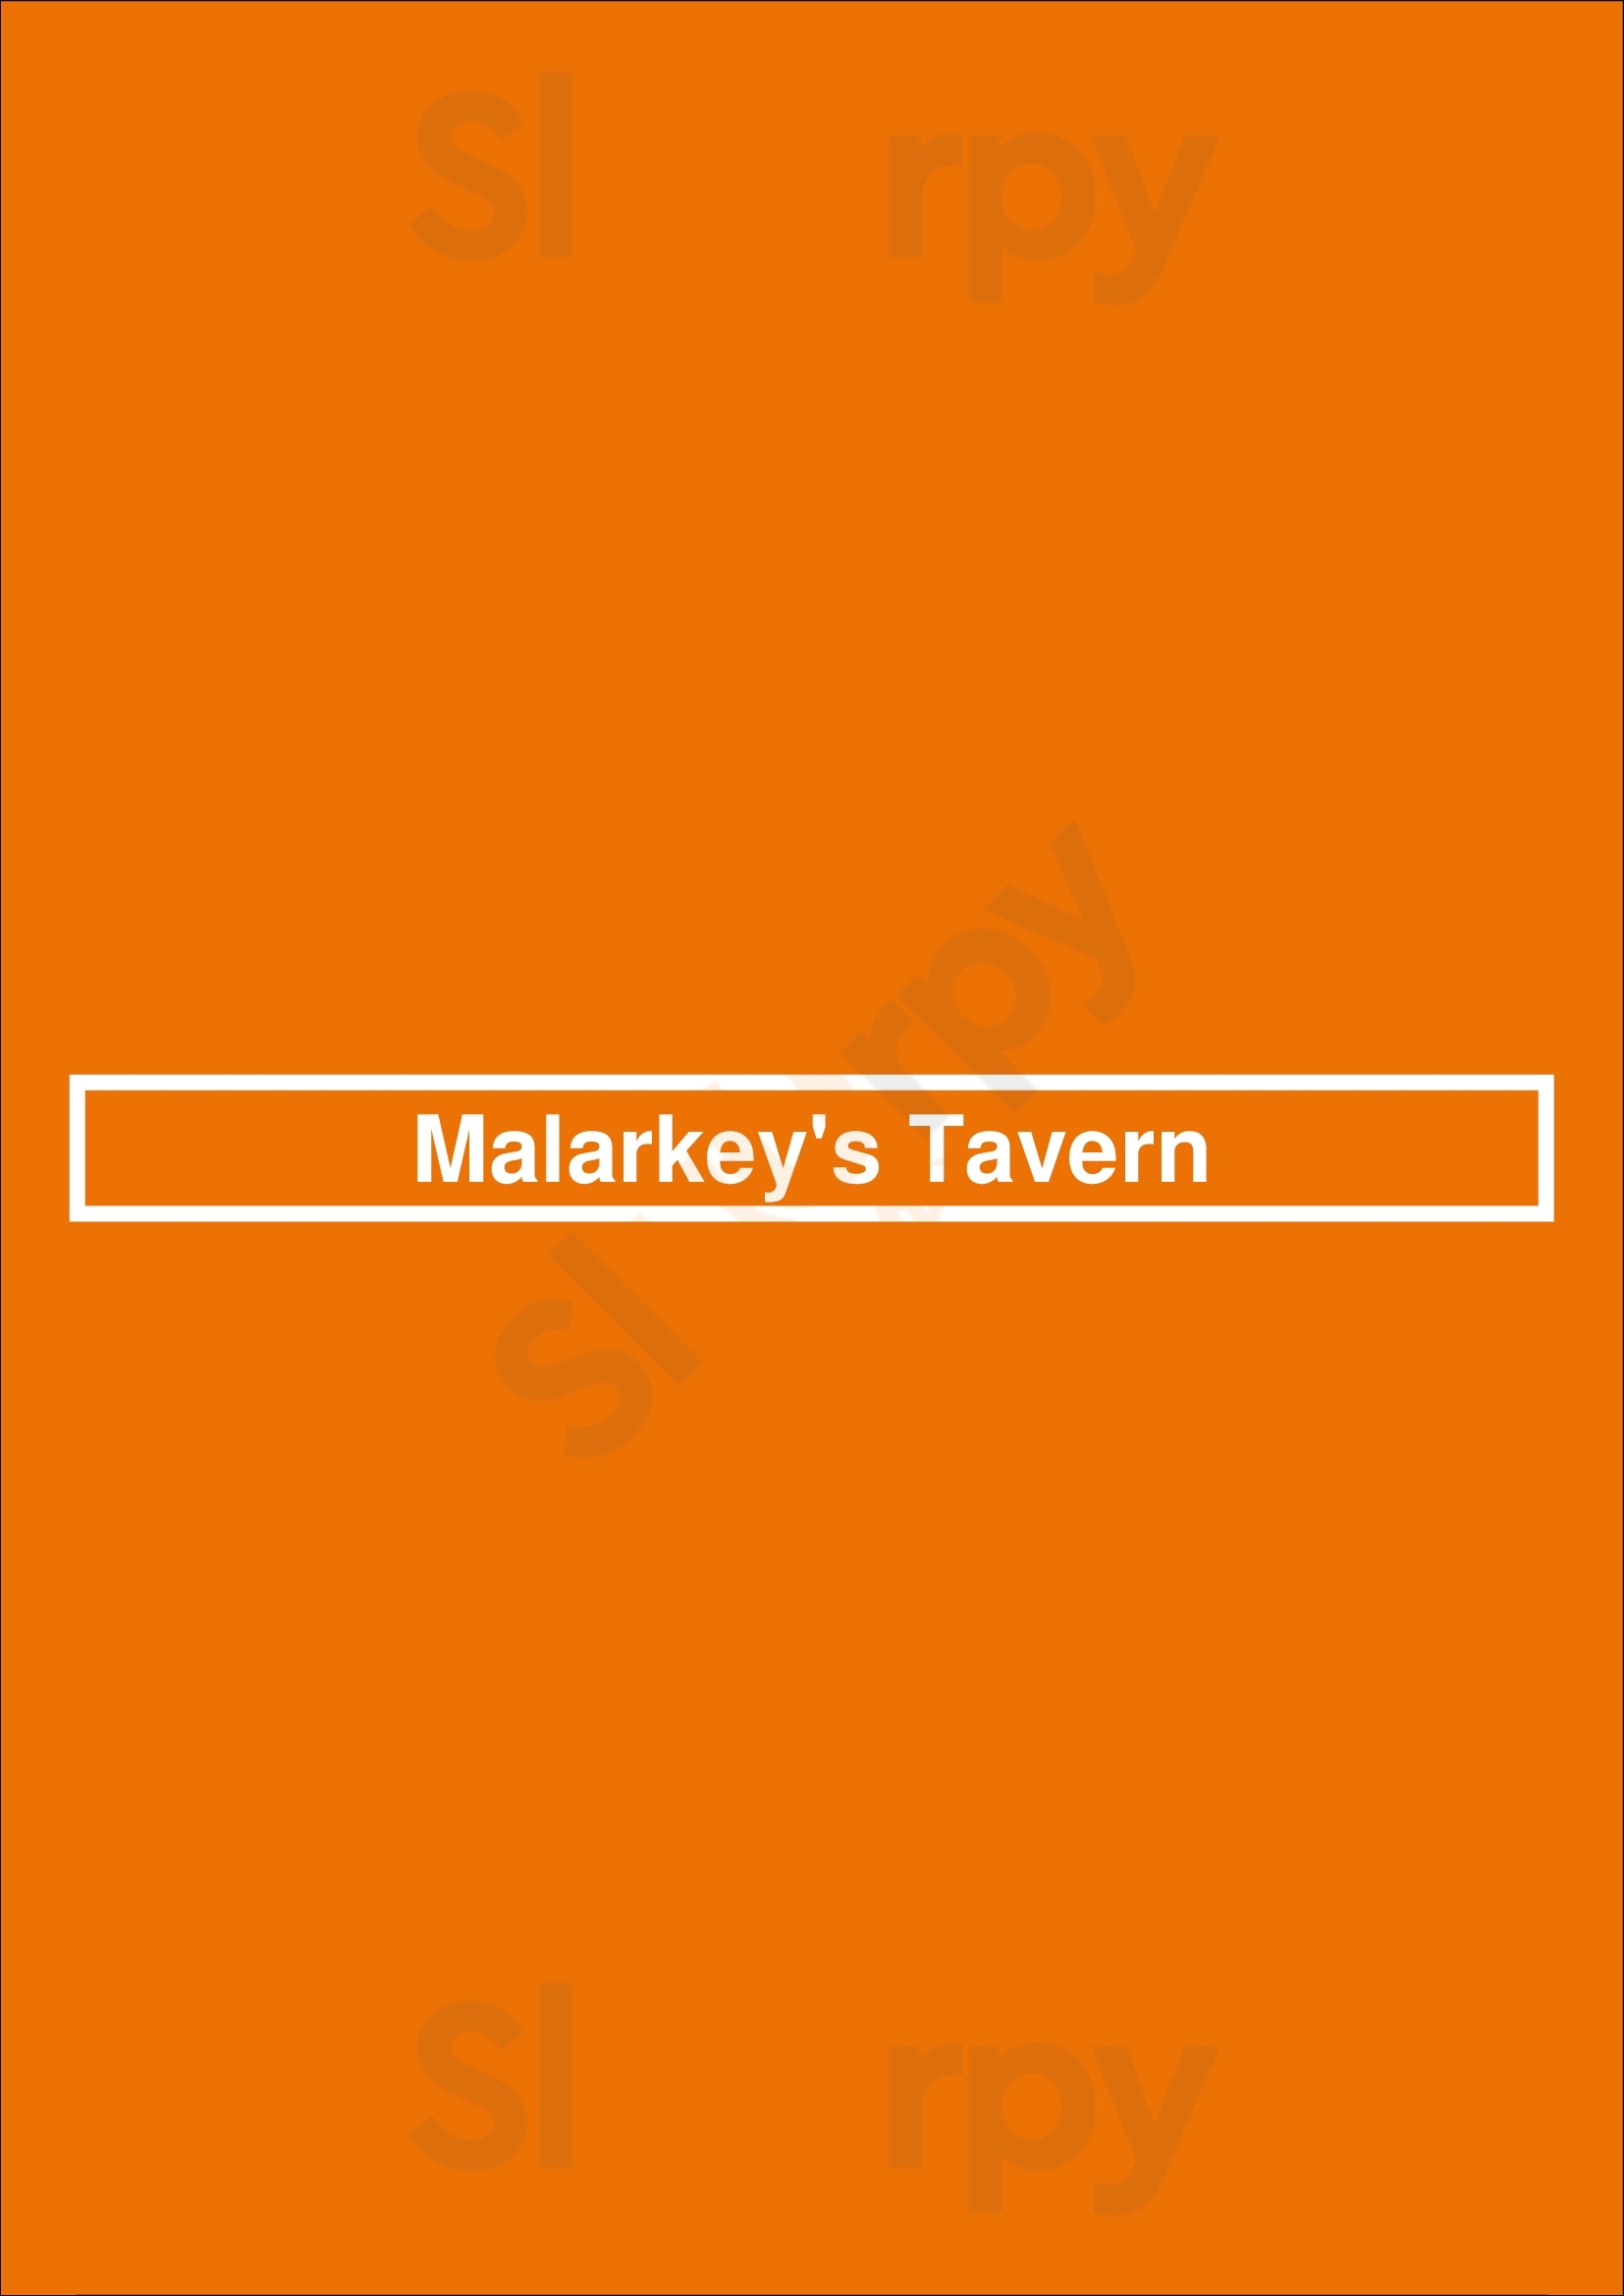 Malarkey's Tavern Dallas Menu - 1